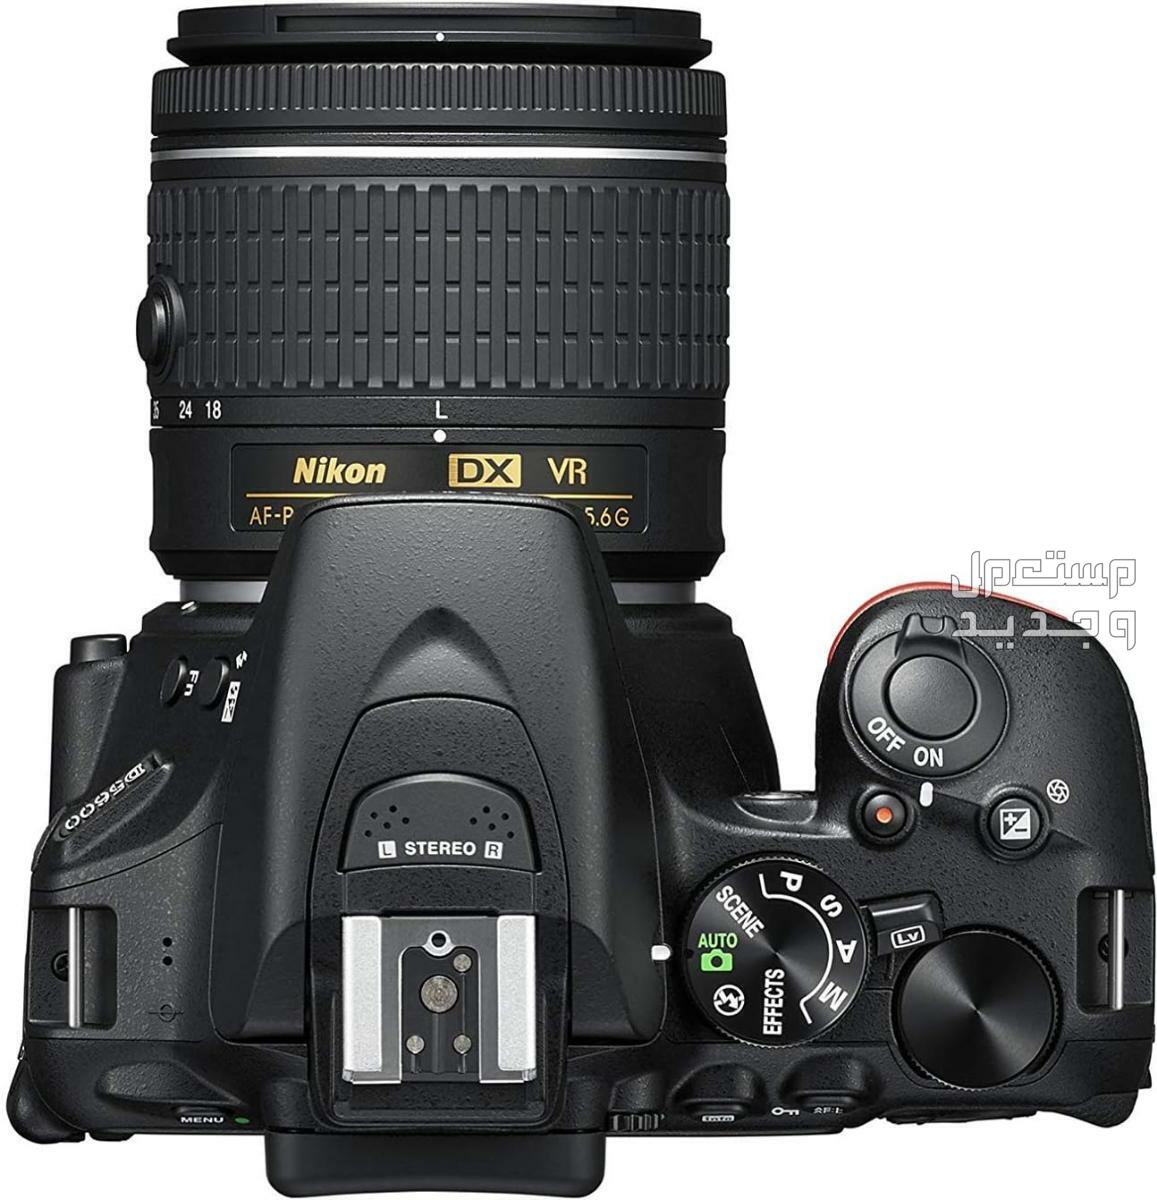 10 كاميرات تصوير ماركات عالمية بأسعار رخيصة في جيبوتي مميزات كاميرا Nikon D5600